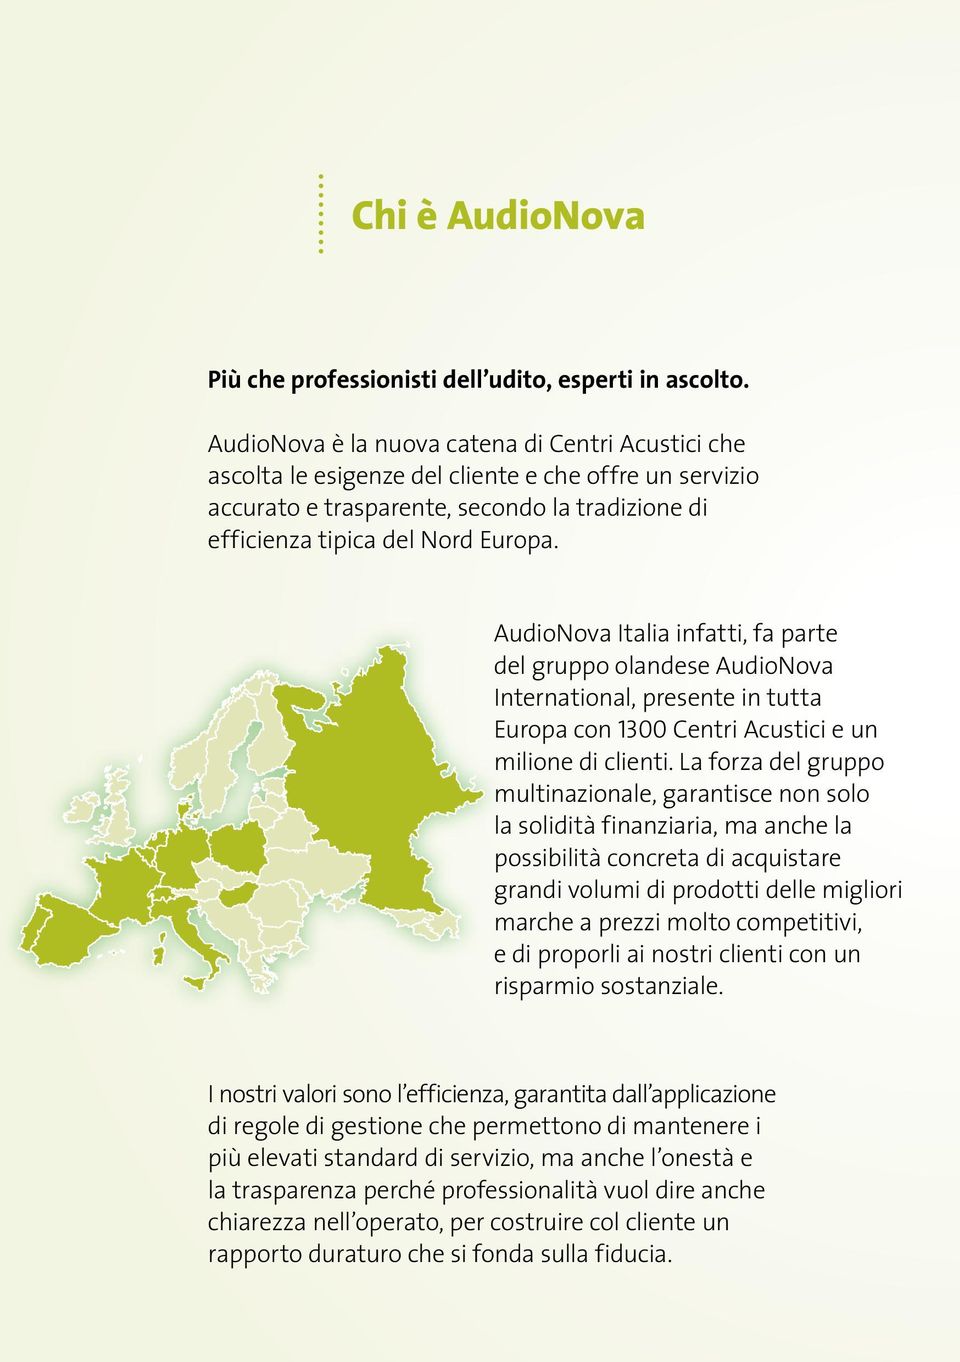 AudioNova Italia infatti, fa parte del gruppo olandese AudioNova International, presente in tutta Europa con 1300 Centri Acustici e un milione di clienti.